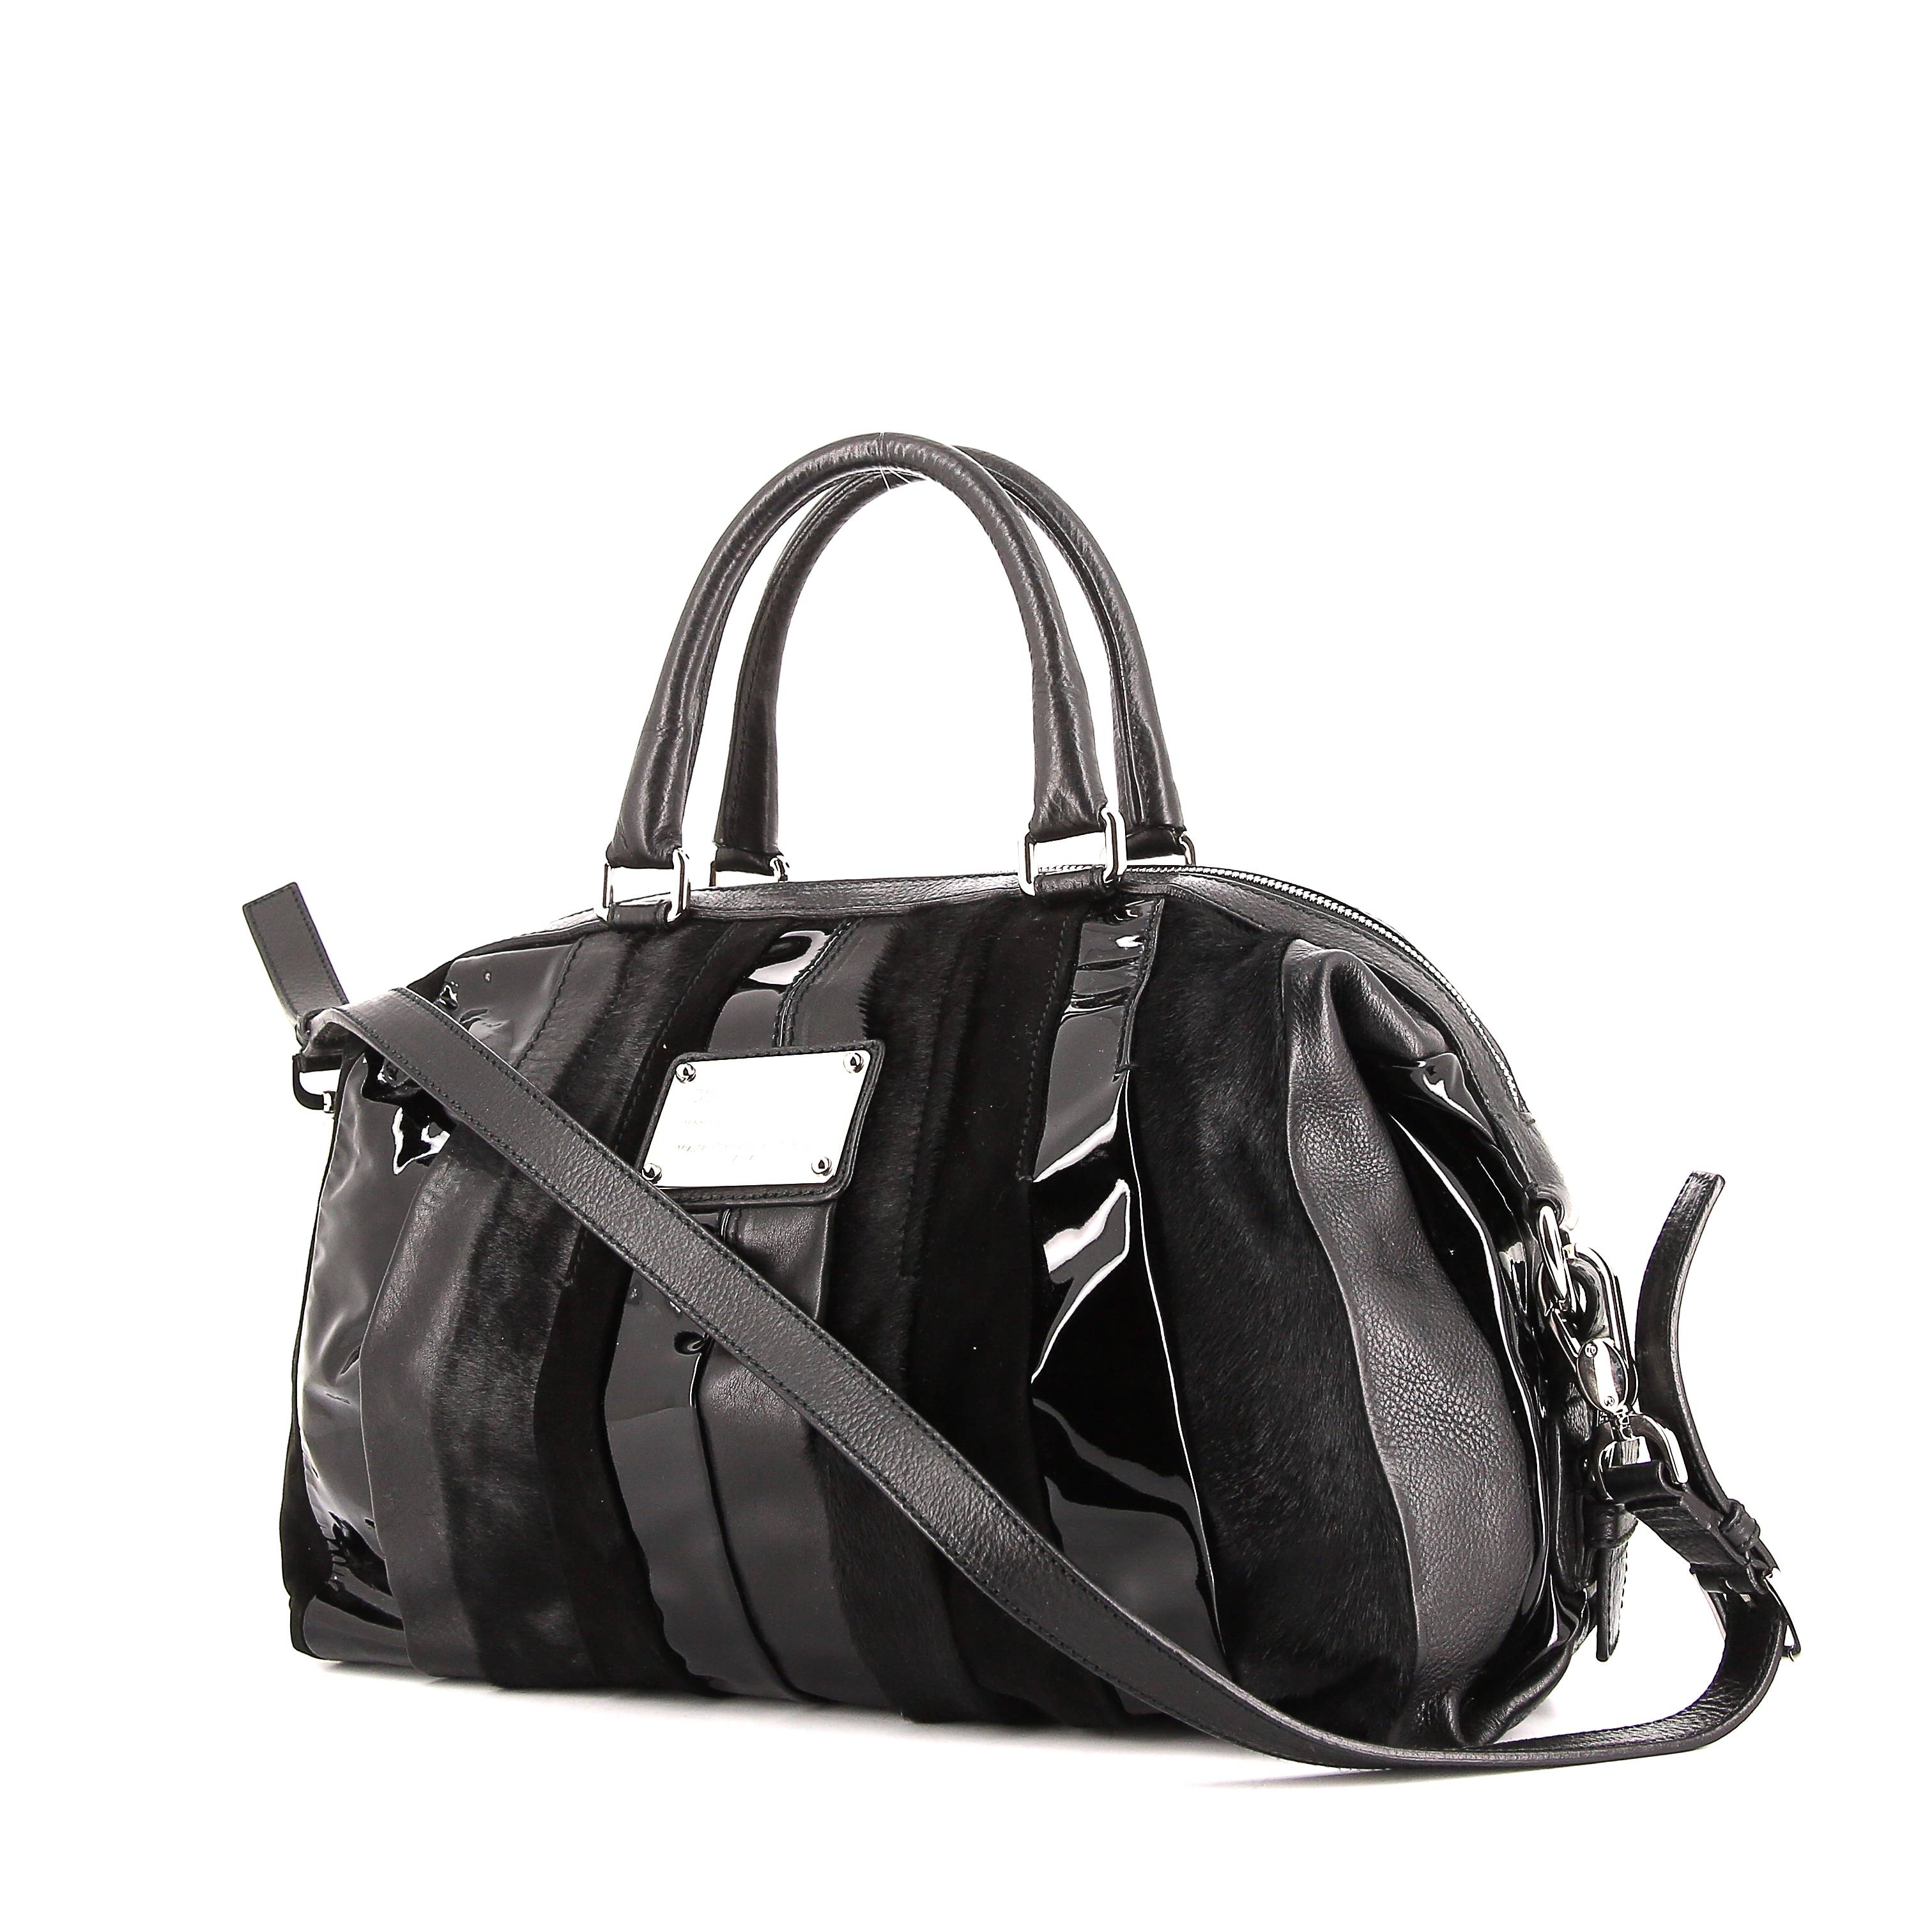 Dolce & Gabbana Miss Romantique Bag Black Leather